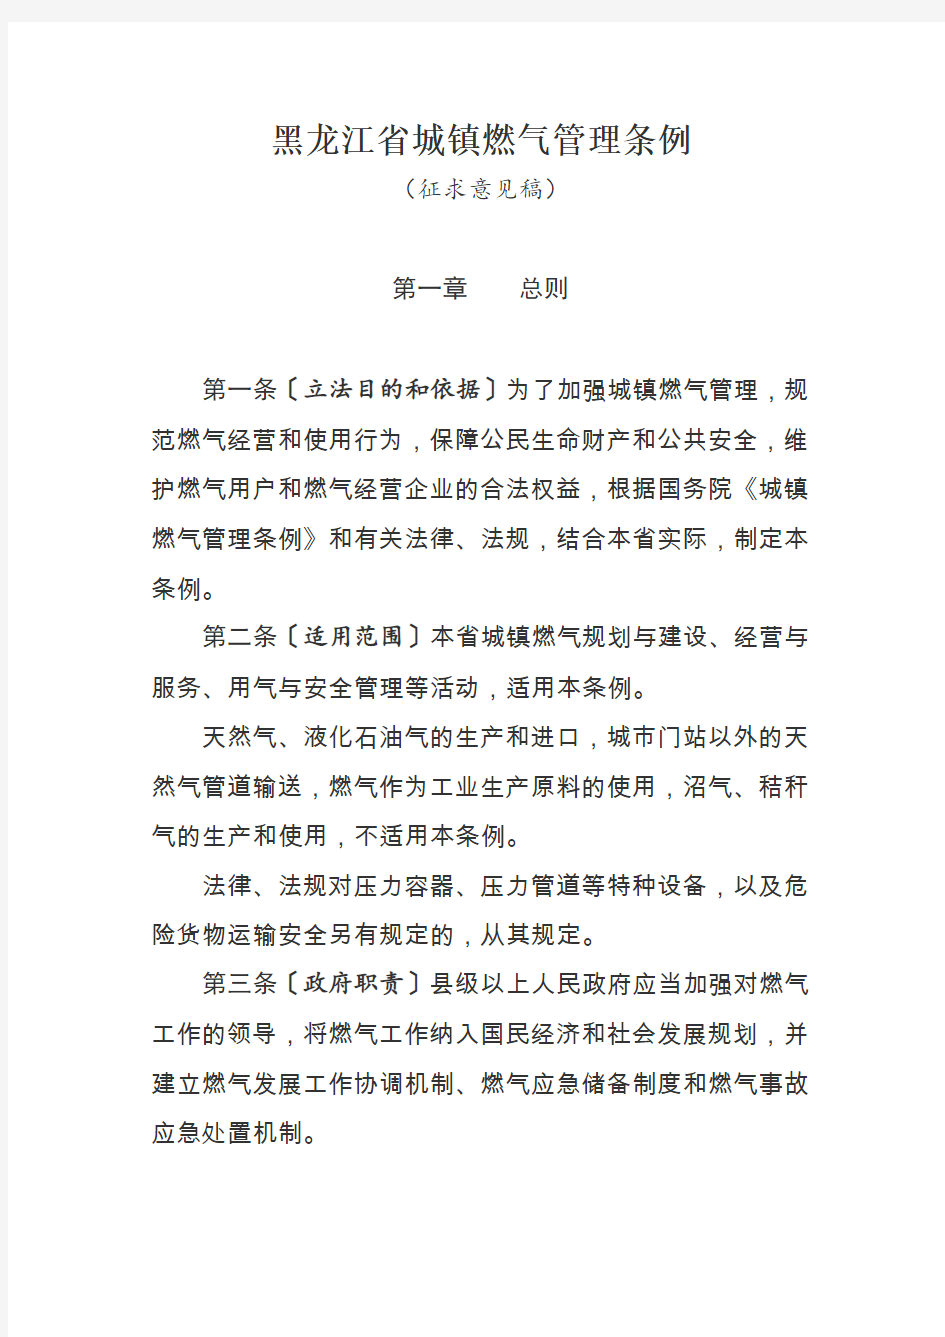 黑龙江省城镇燃气管理条例